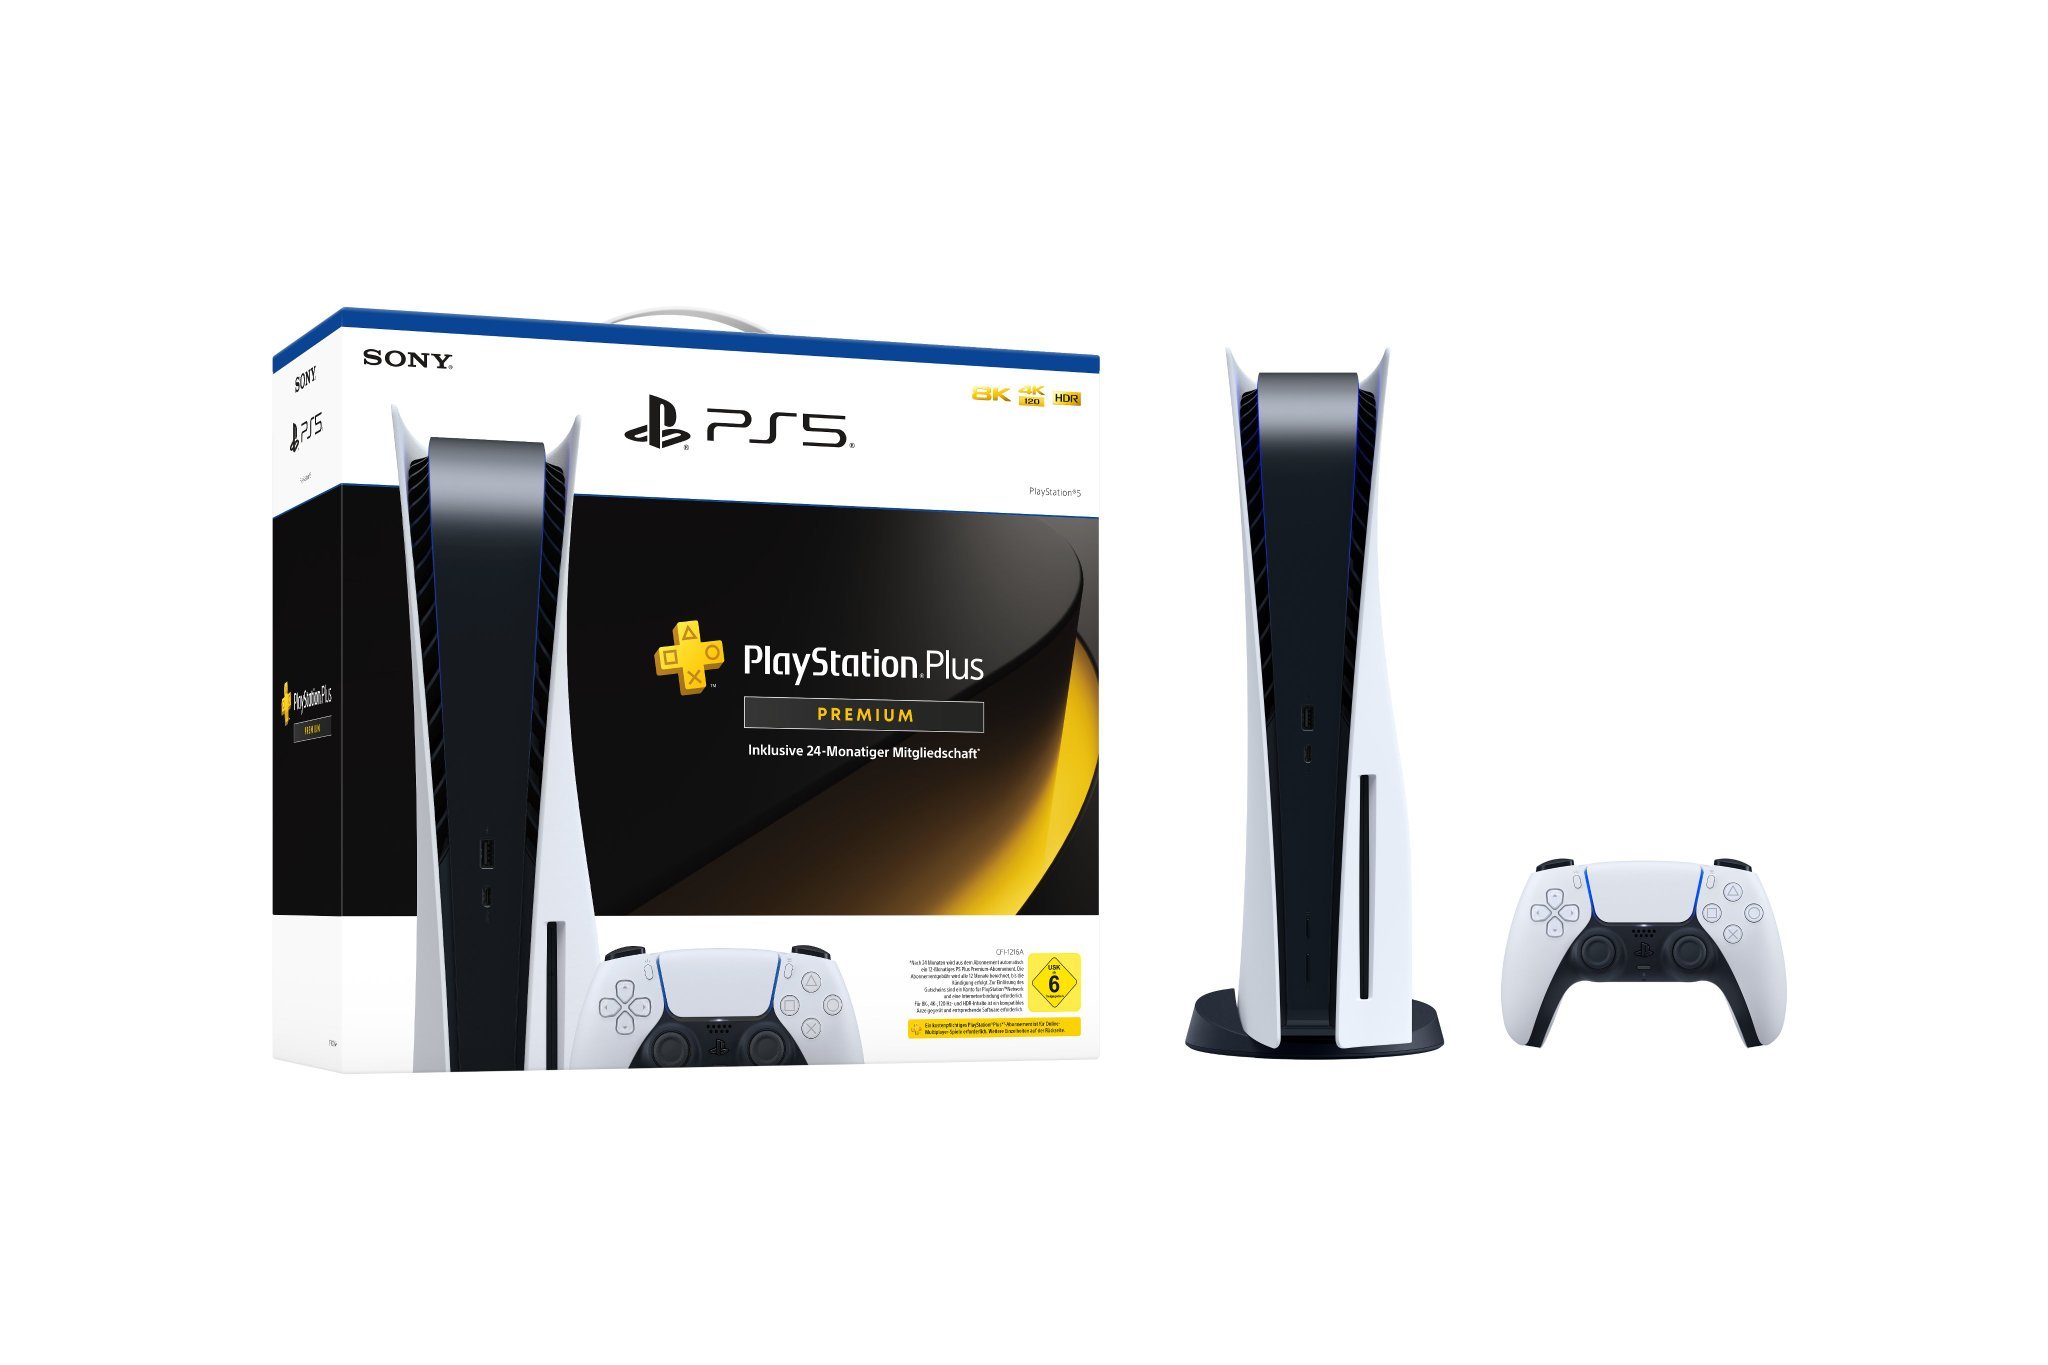 Imagem mostra suposto pacote do PlayStation 5 oferecido pela Sony, com 2 anos de PlayStation Plus